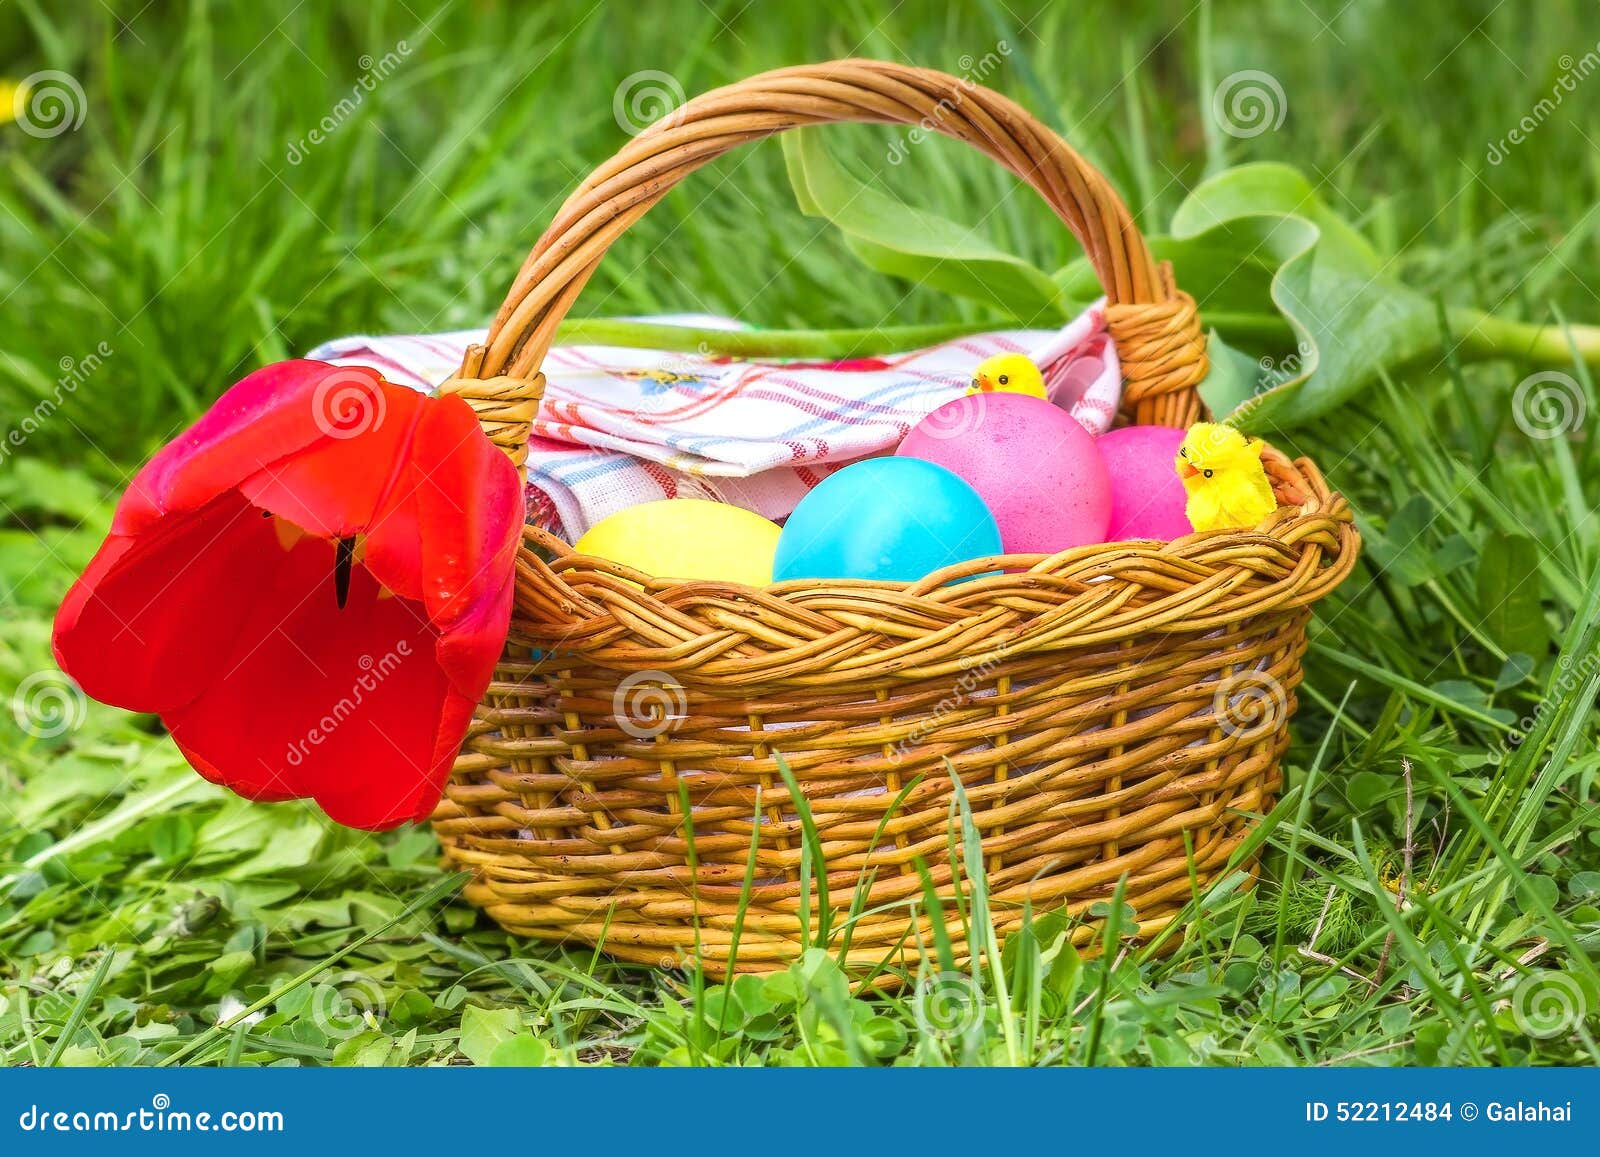 Cesta com ovos da páscoa e a tulipa vermelha. Cesta de vime com ovos coloridos, a tulipa vermelha e os pintainhos do brinquedo na grama verde em um dia de mola